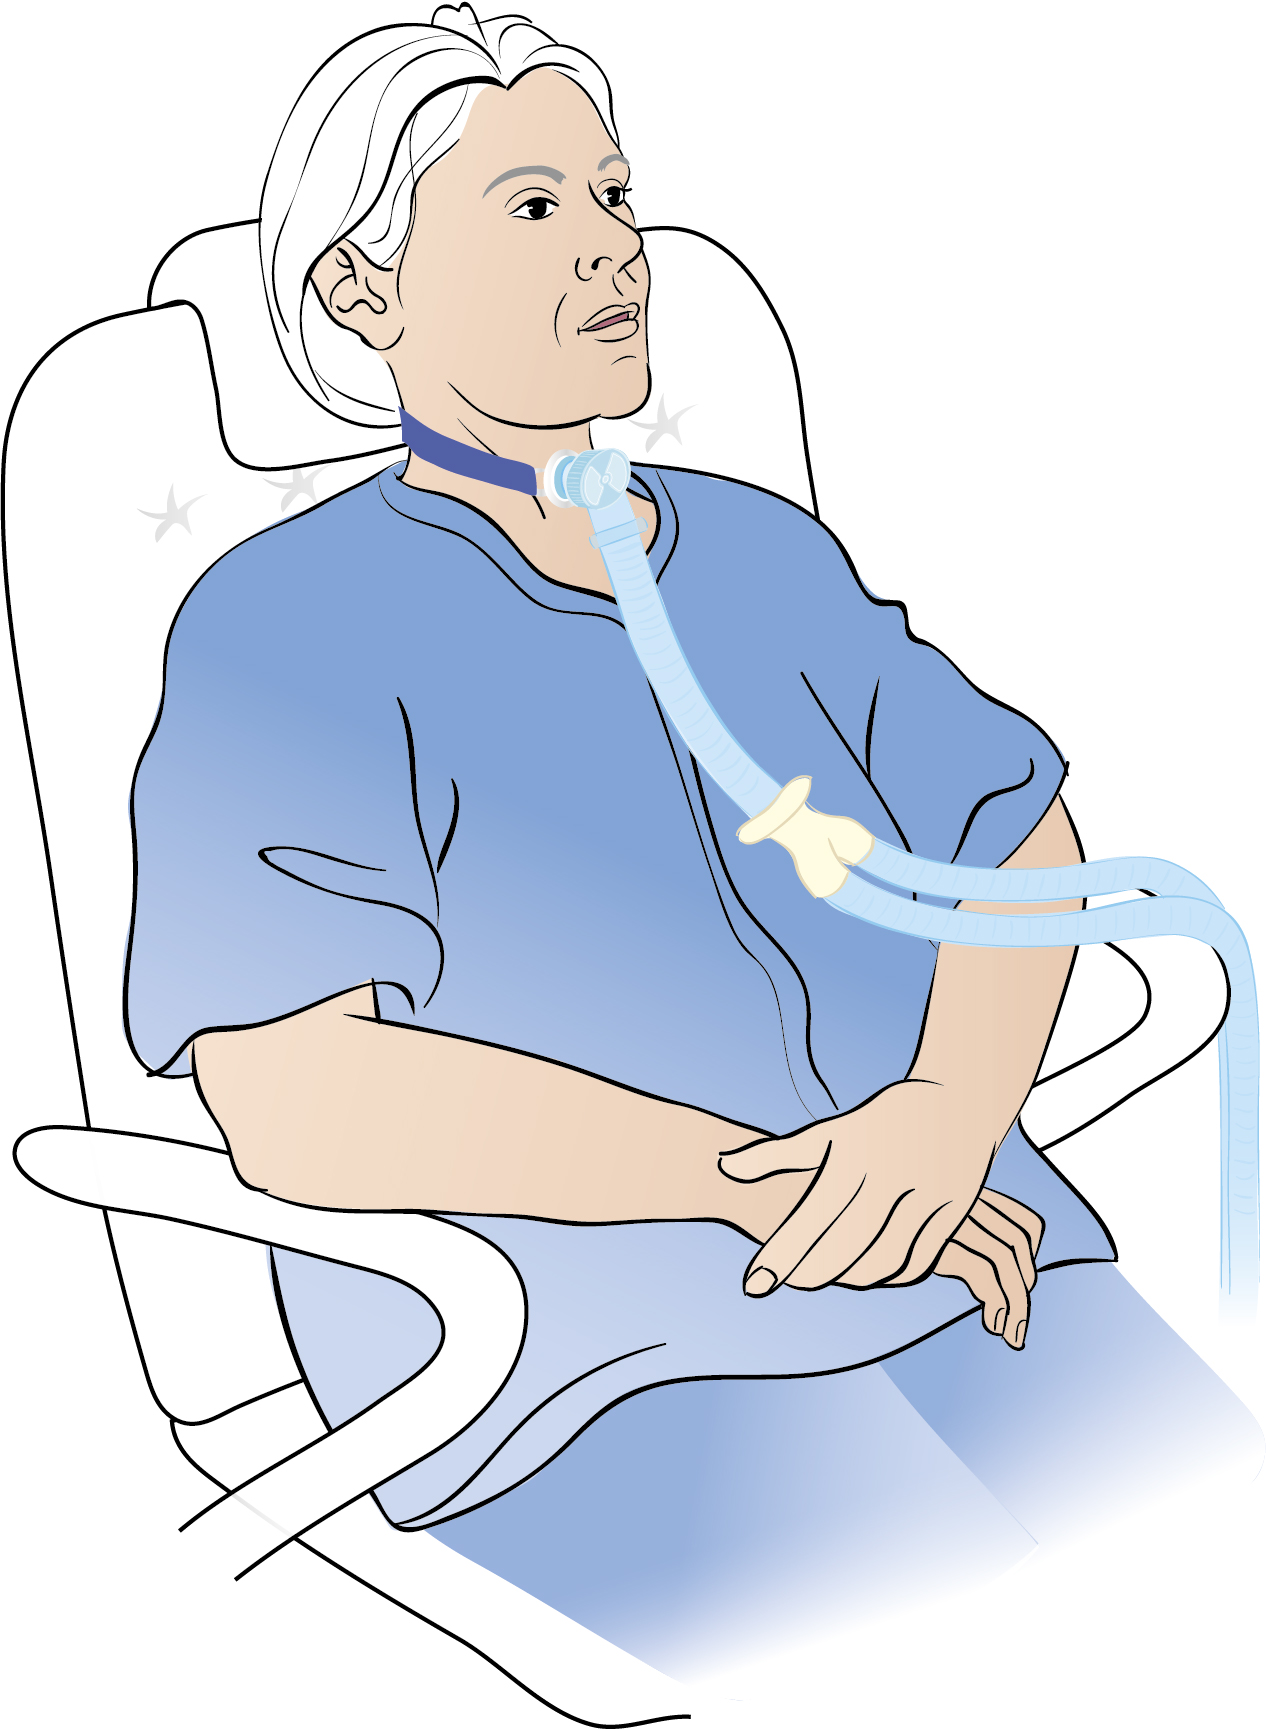 Person som sitter ner och har en respirator kopplad på halsen. 